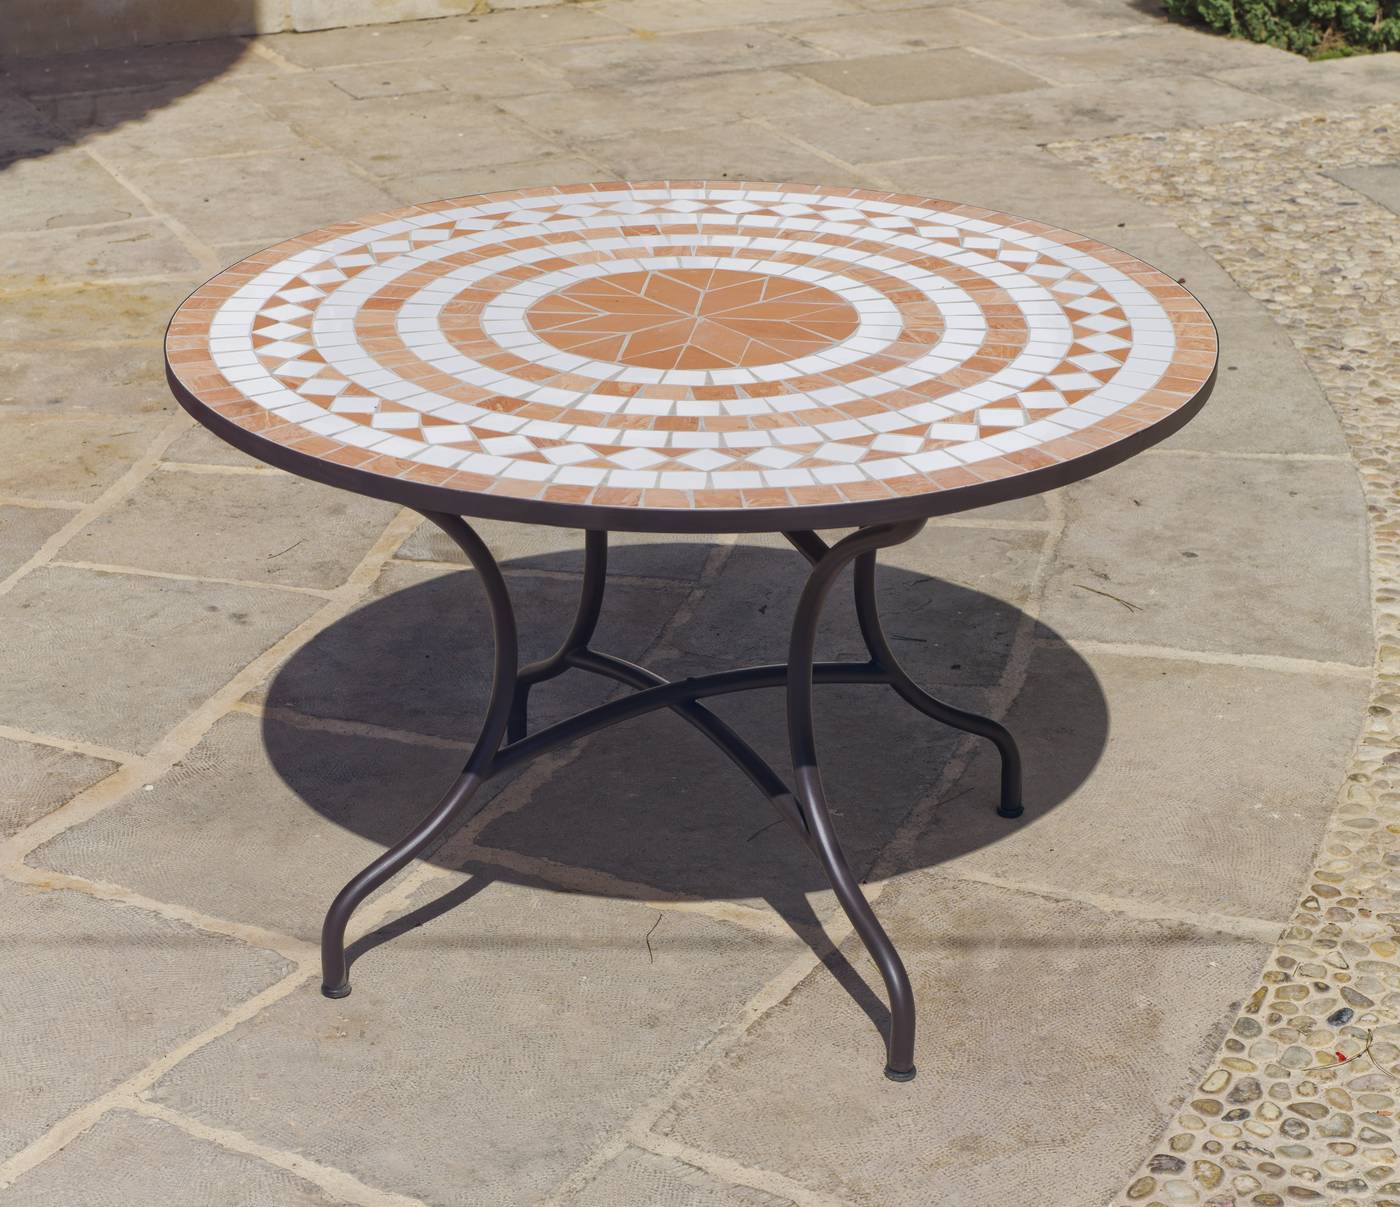 Set Mosaico Dogliani-Caimán 90-4 - Conjunto de forja color bronce: mesa redonda de acero forjado, con tablero mosaico de 90 cm. + 4 sillones con cojines